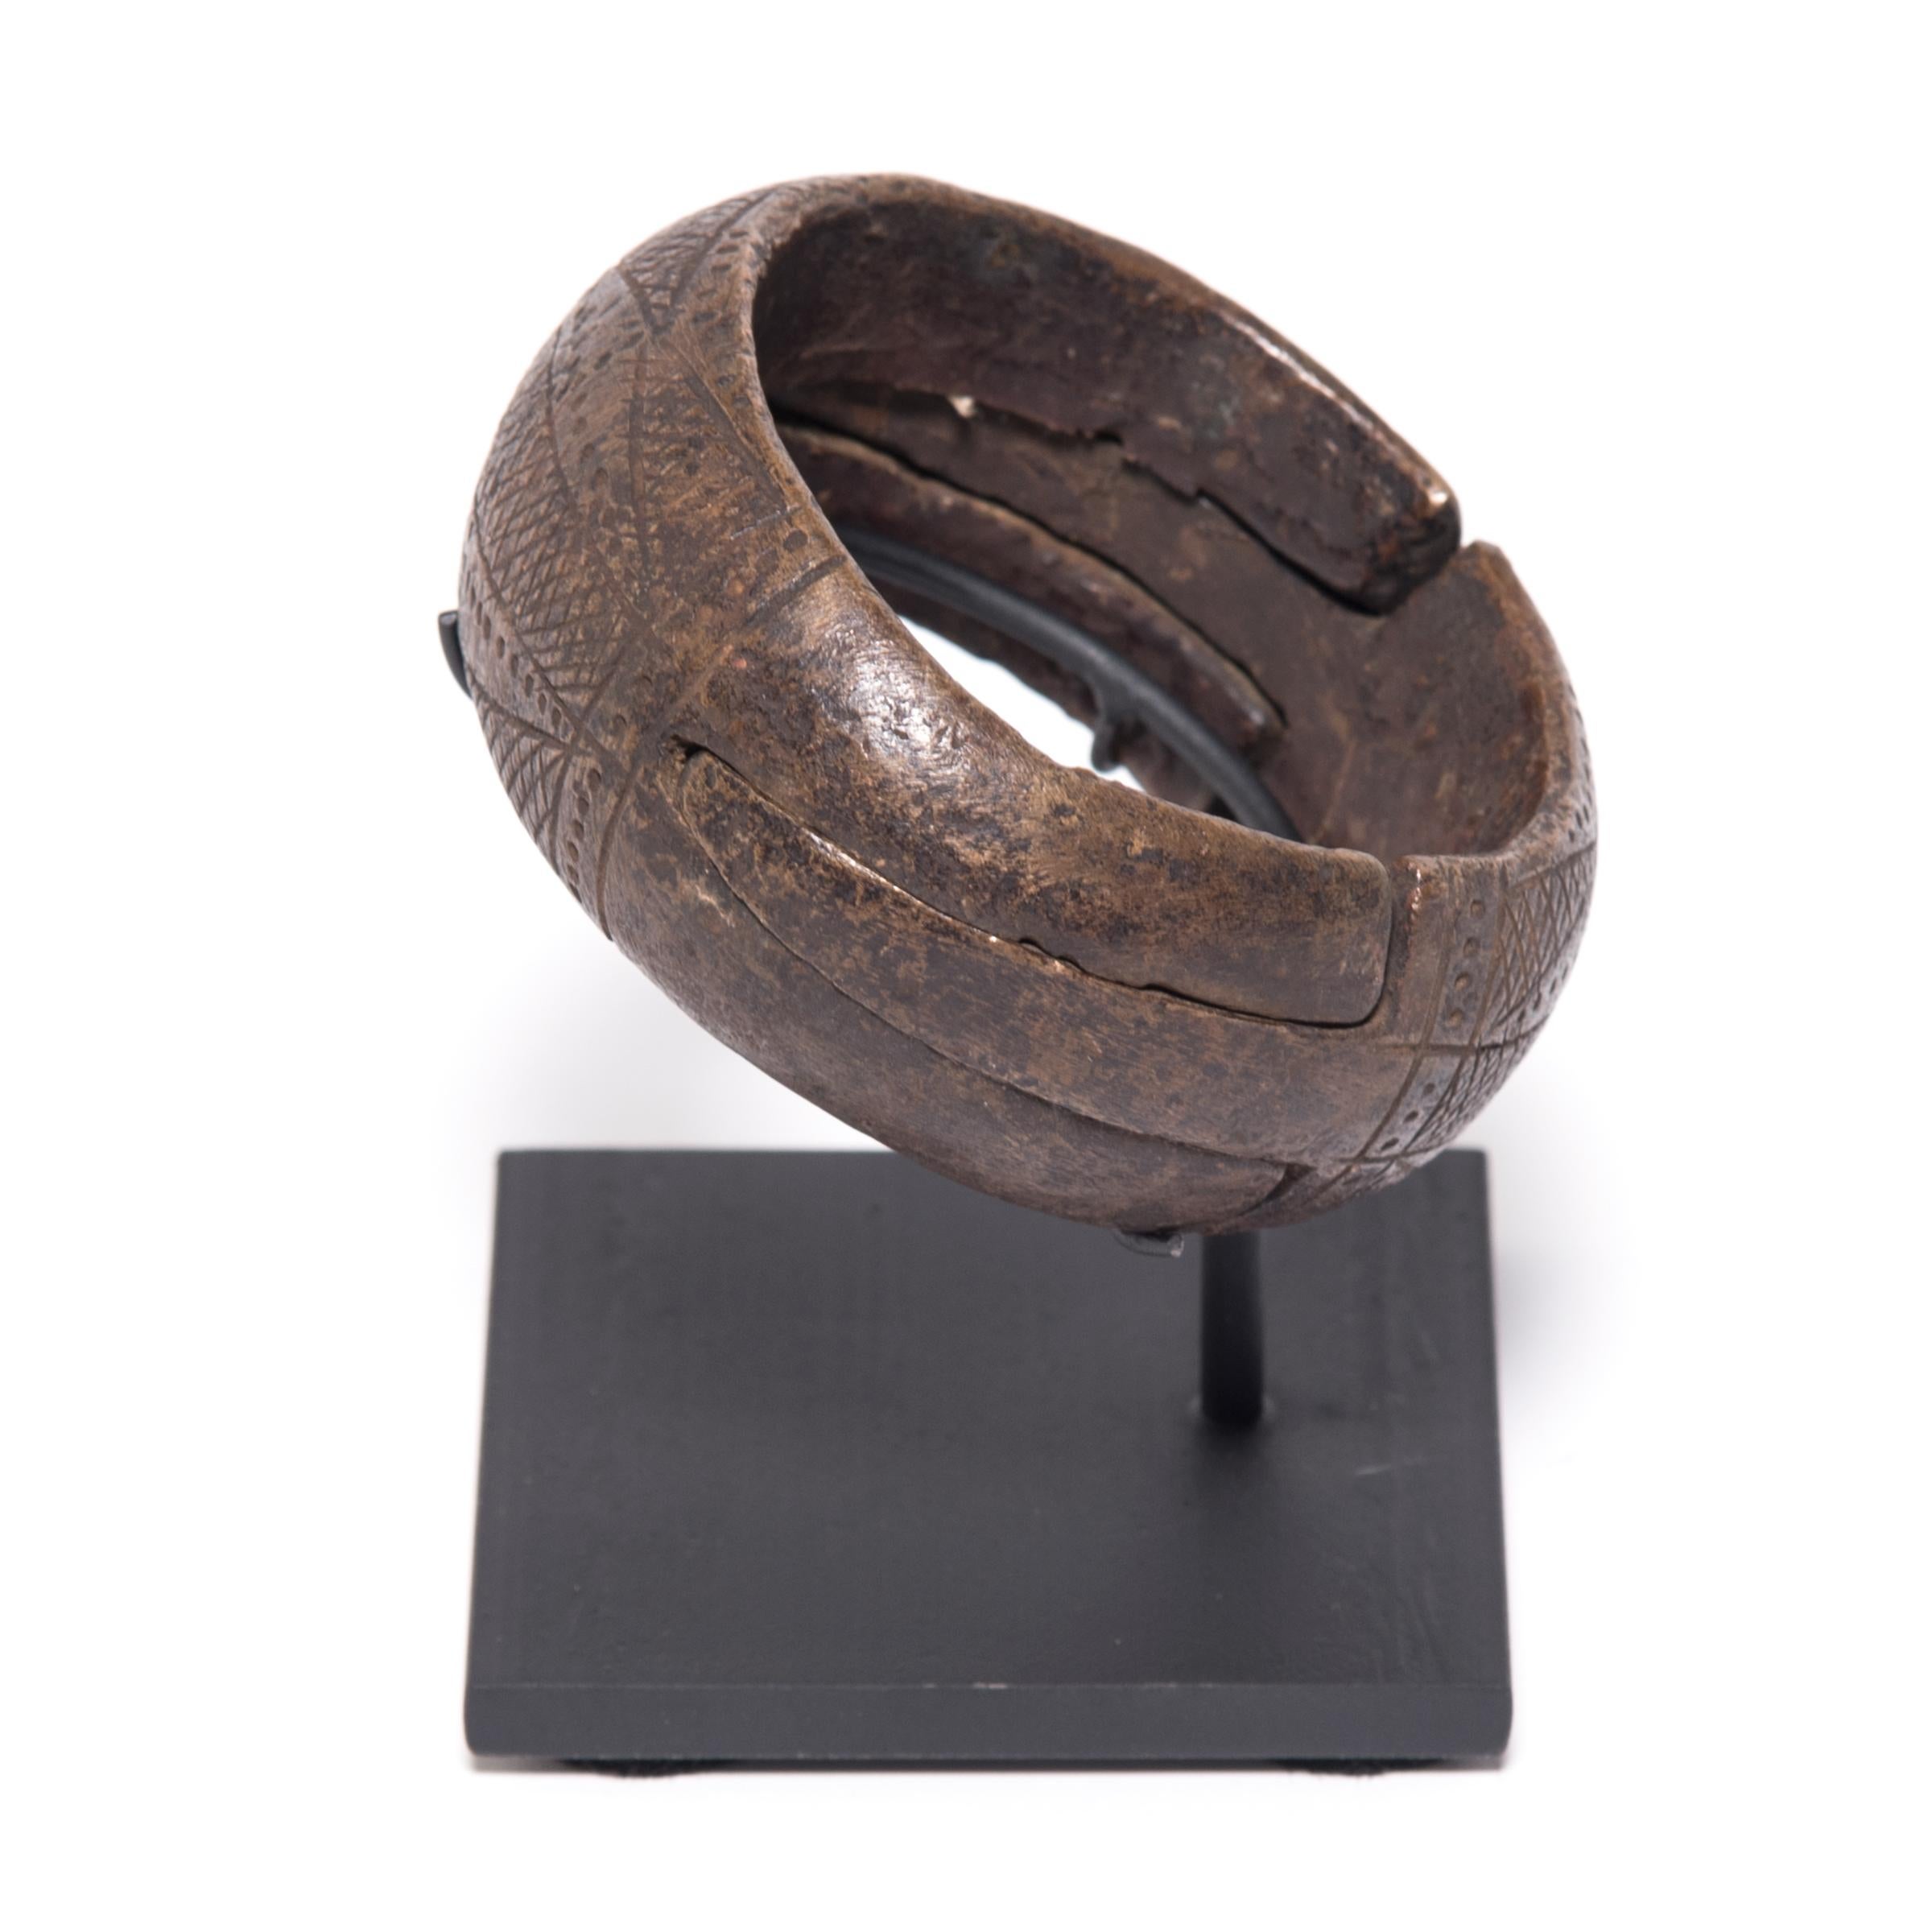 La texture et la forme traditionnelles définissent cet objet sculptural en cuivre nigérien. La géométrie complexe a été obtenue grâce à un processus connu sous le nom de scarification. L'artisan traçait et retraçait méticuleusement ses sculptures